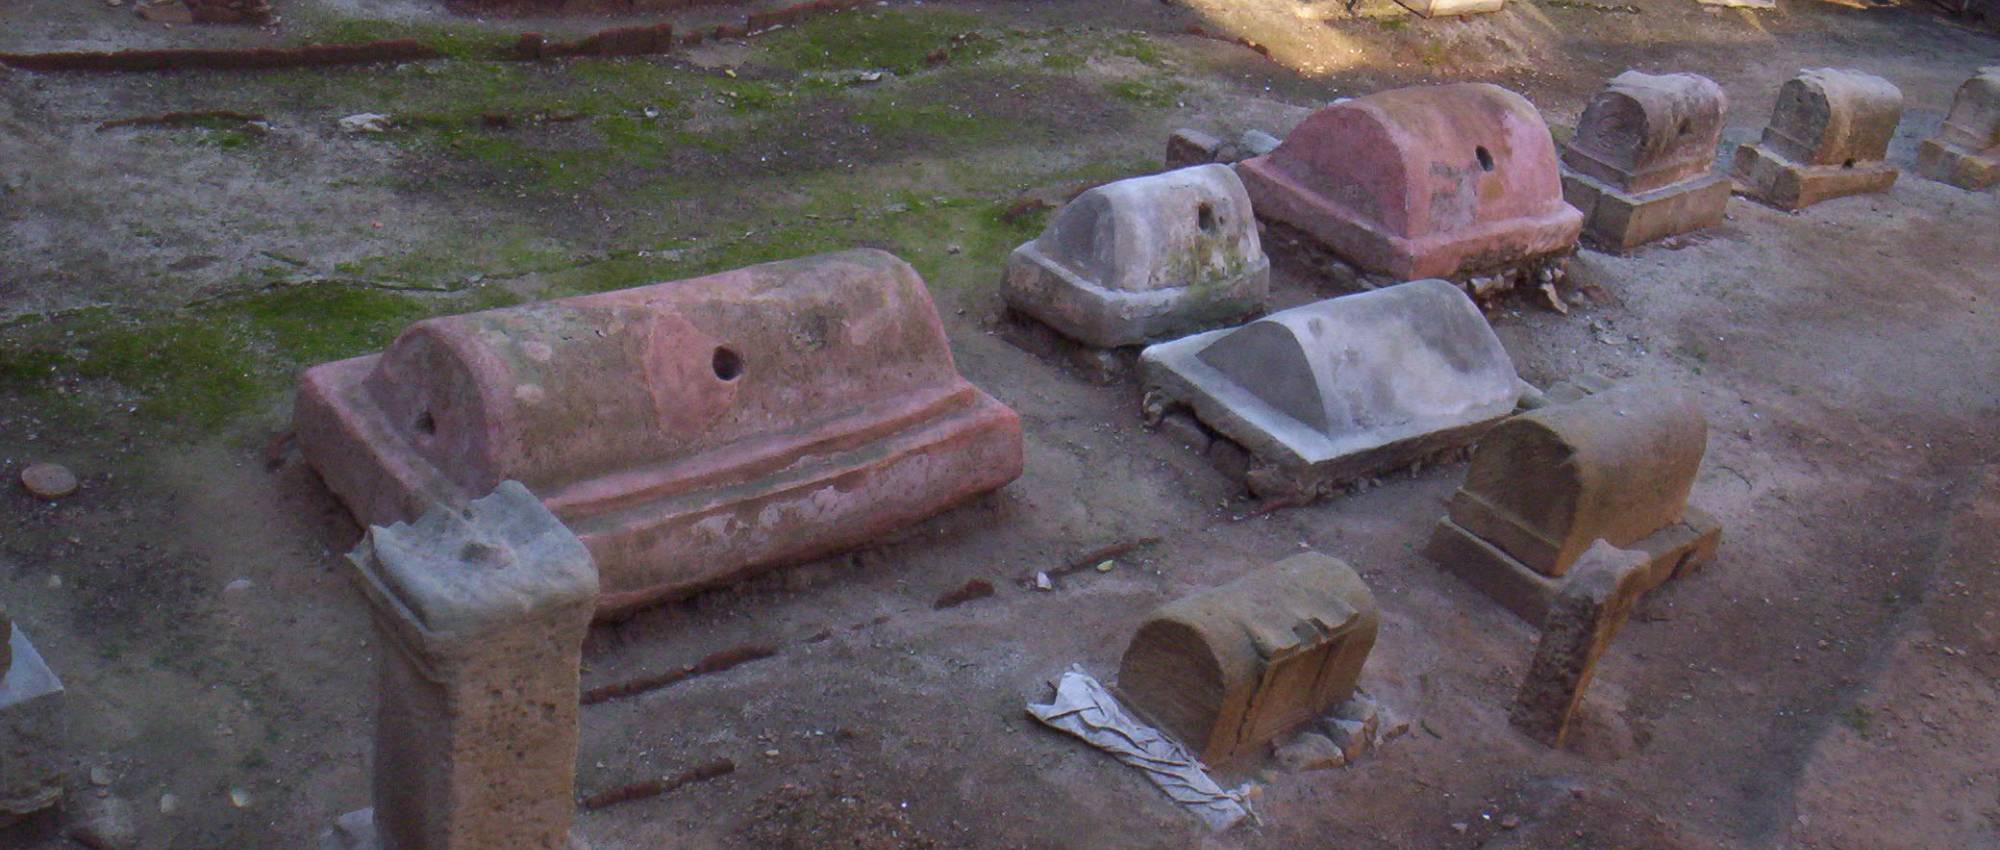 Fotografia de l'antiga necròpolis romana a Barcino. Àlex / Wikimedia Commons. CC BY-SA 2.5